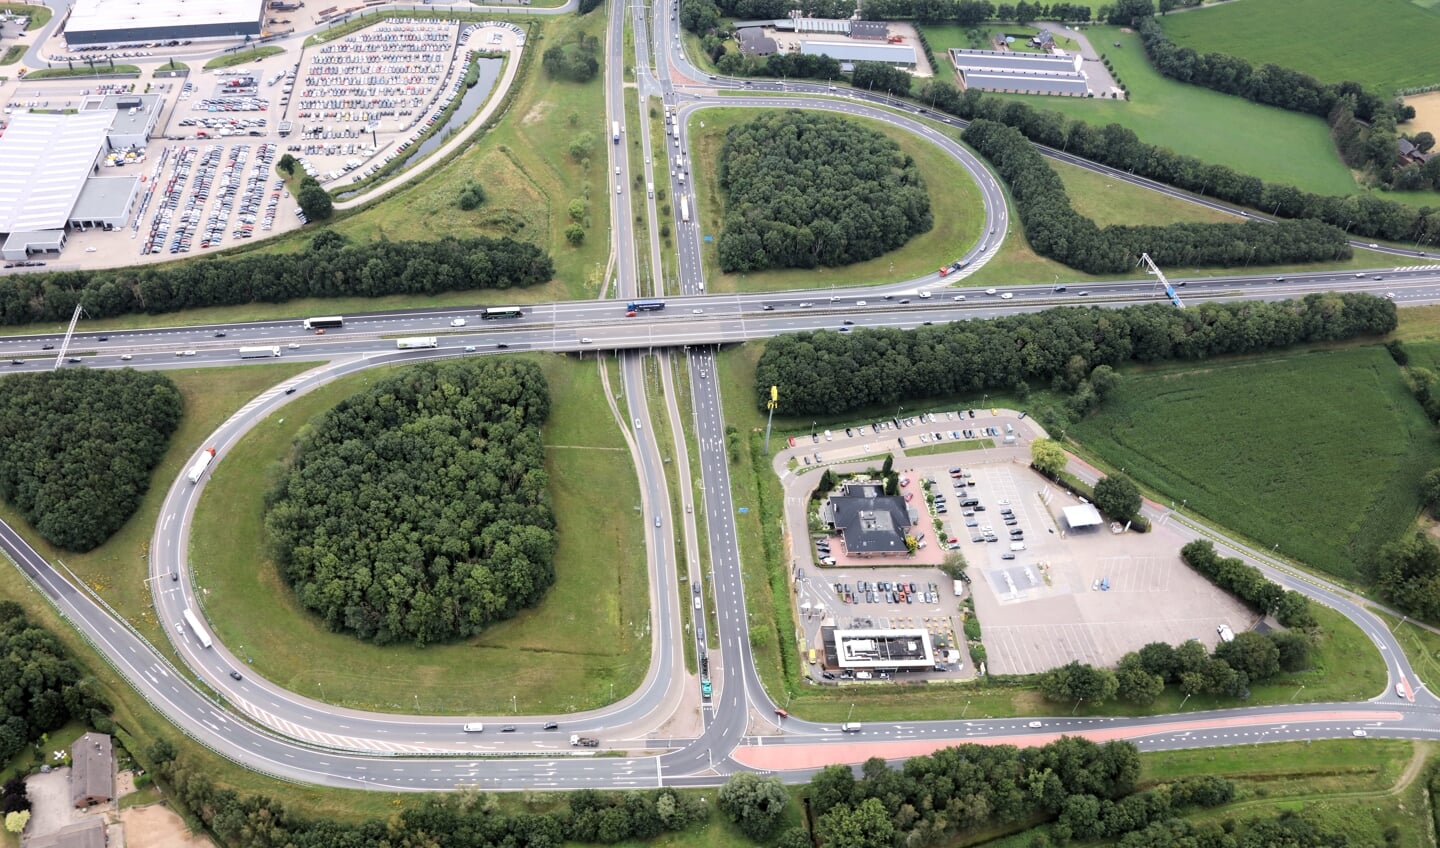 Luchtfoto van knooppunt A1/A30 bij Barneveld.